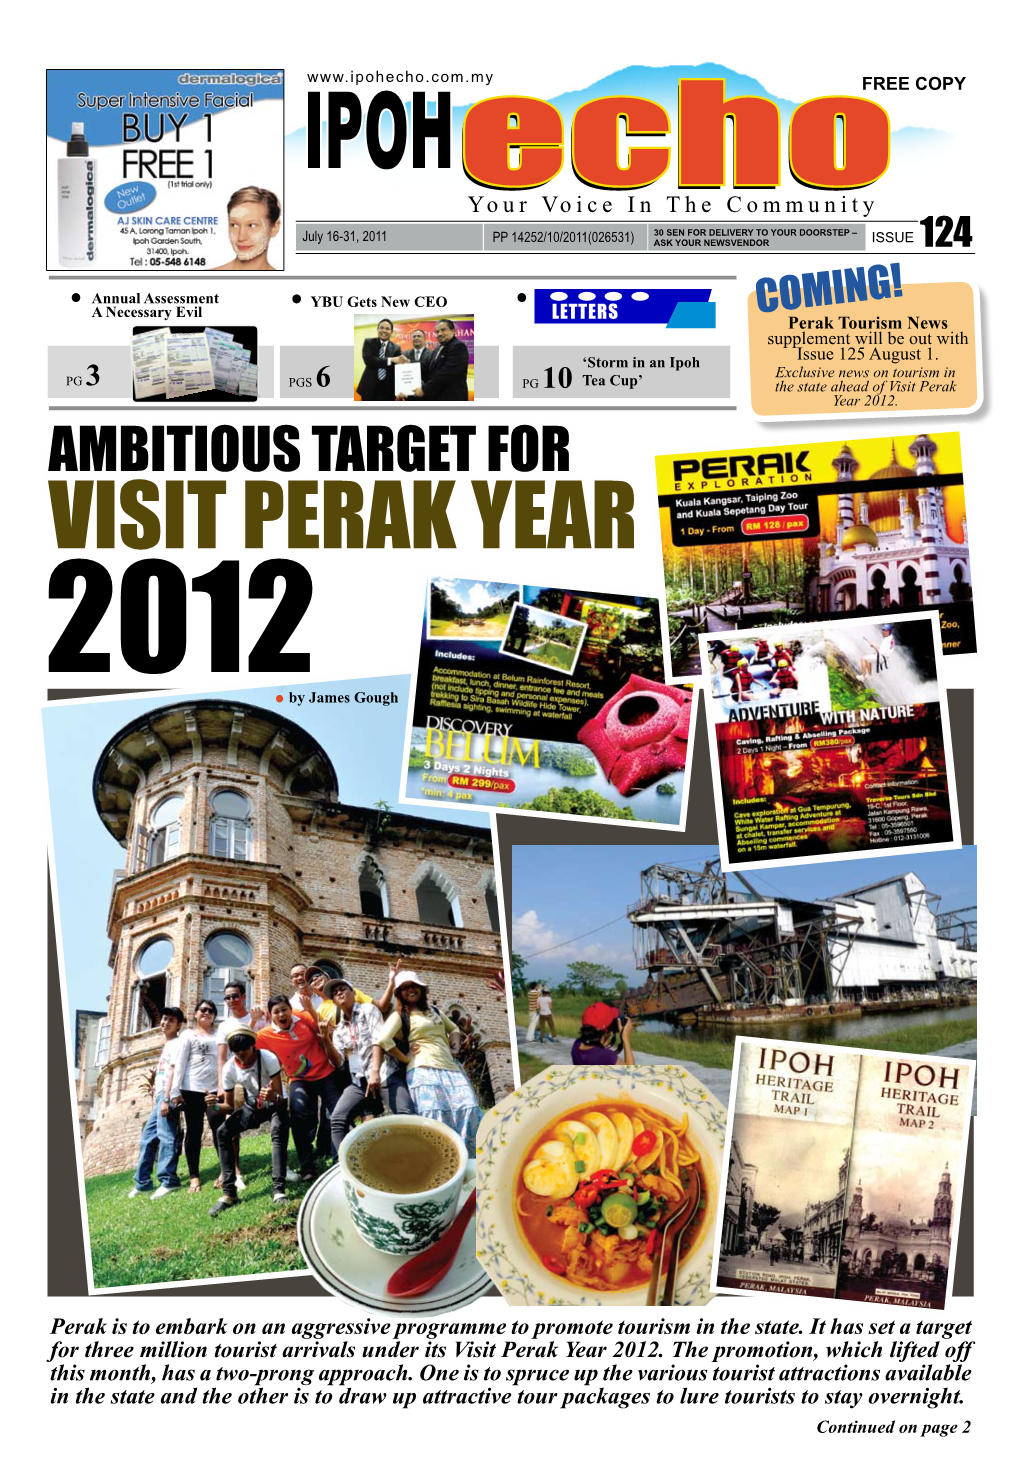 Visit Perak Year 2012